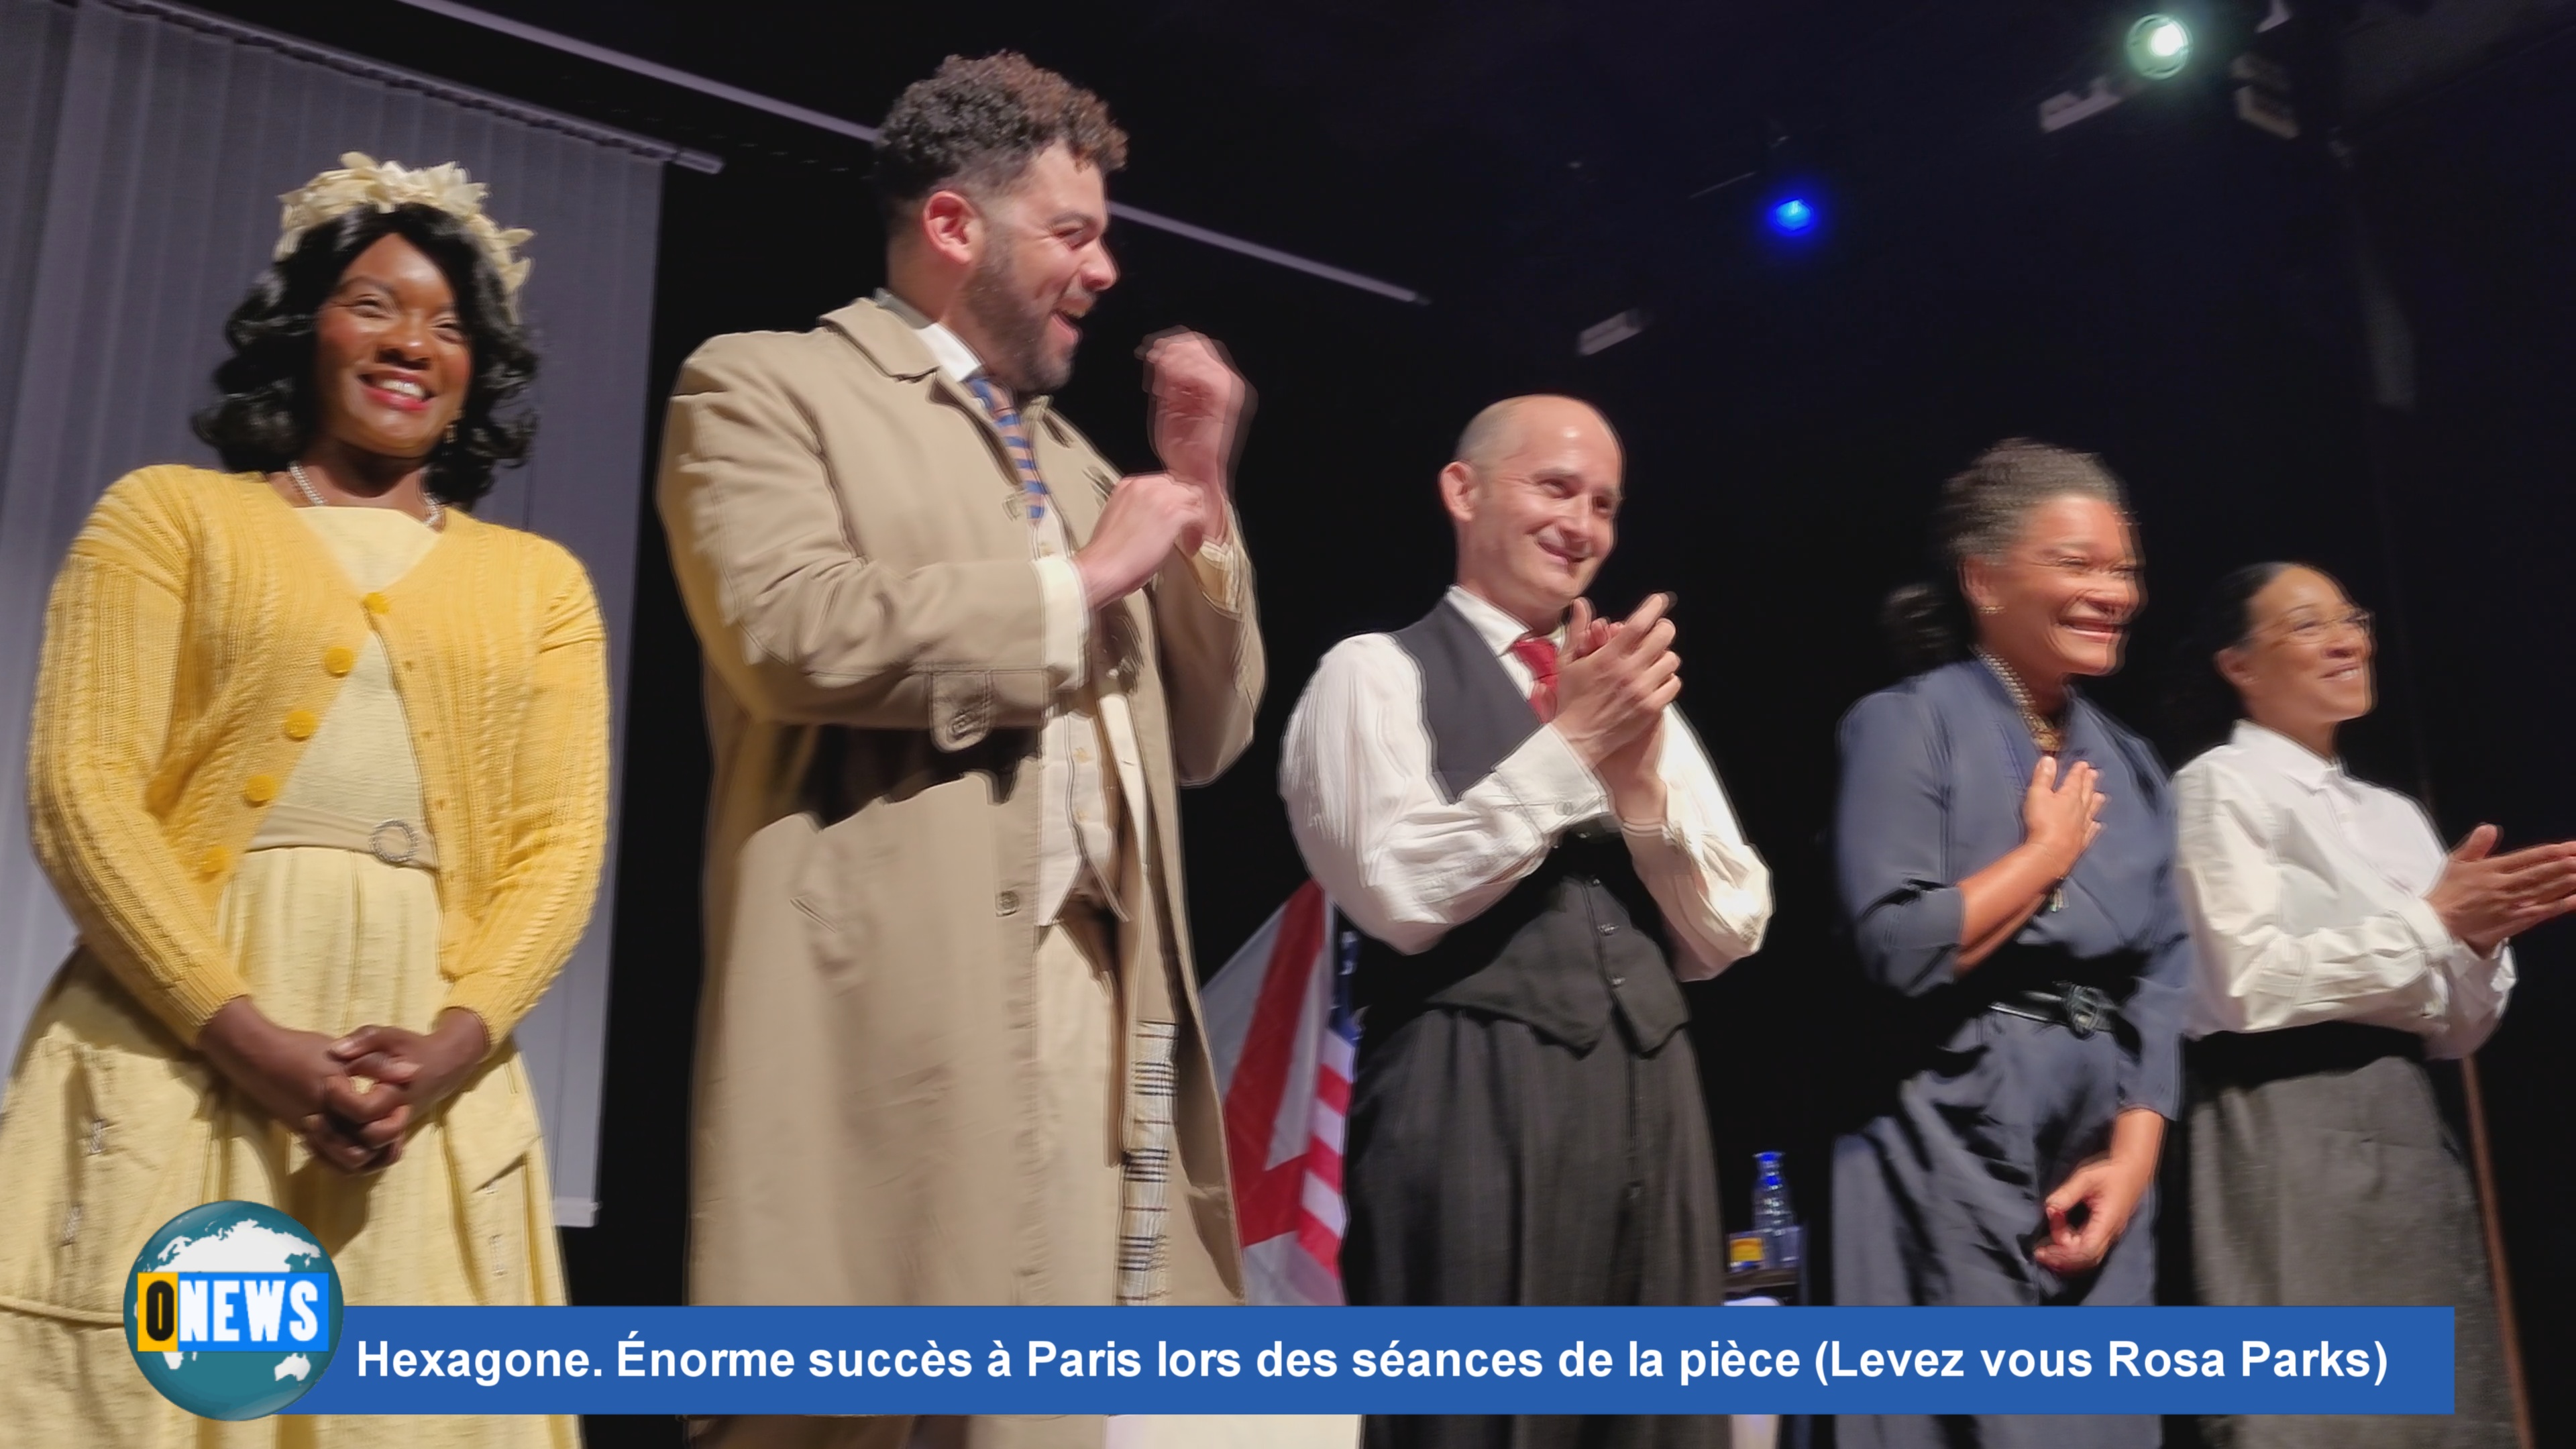 [Vidéo] Hexagone. Énorme succès à Paris lors des séances de la pièce de Théâtre (Levez vous Rosa Parks)